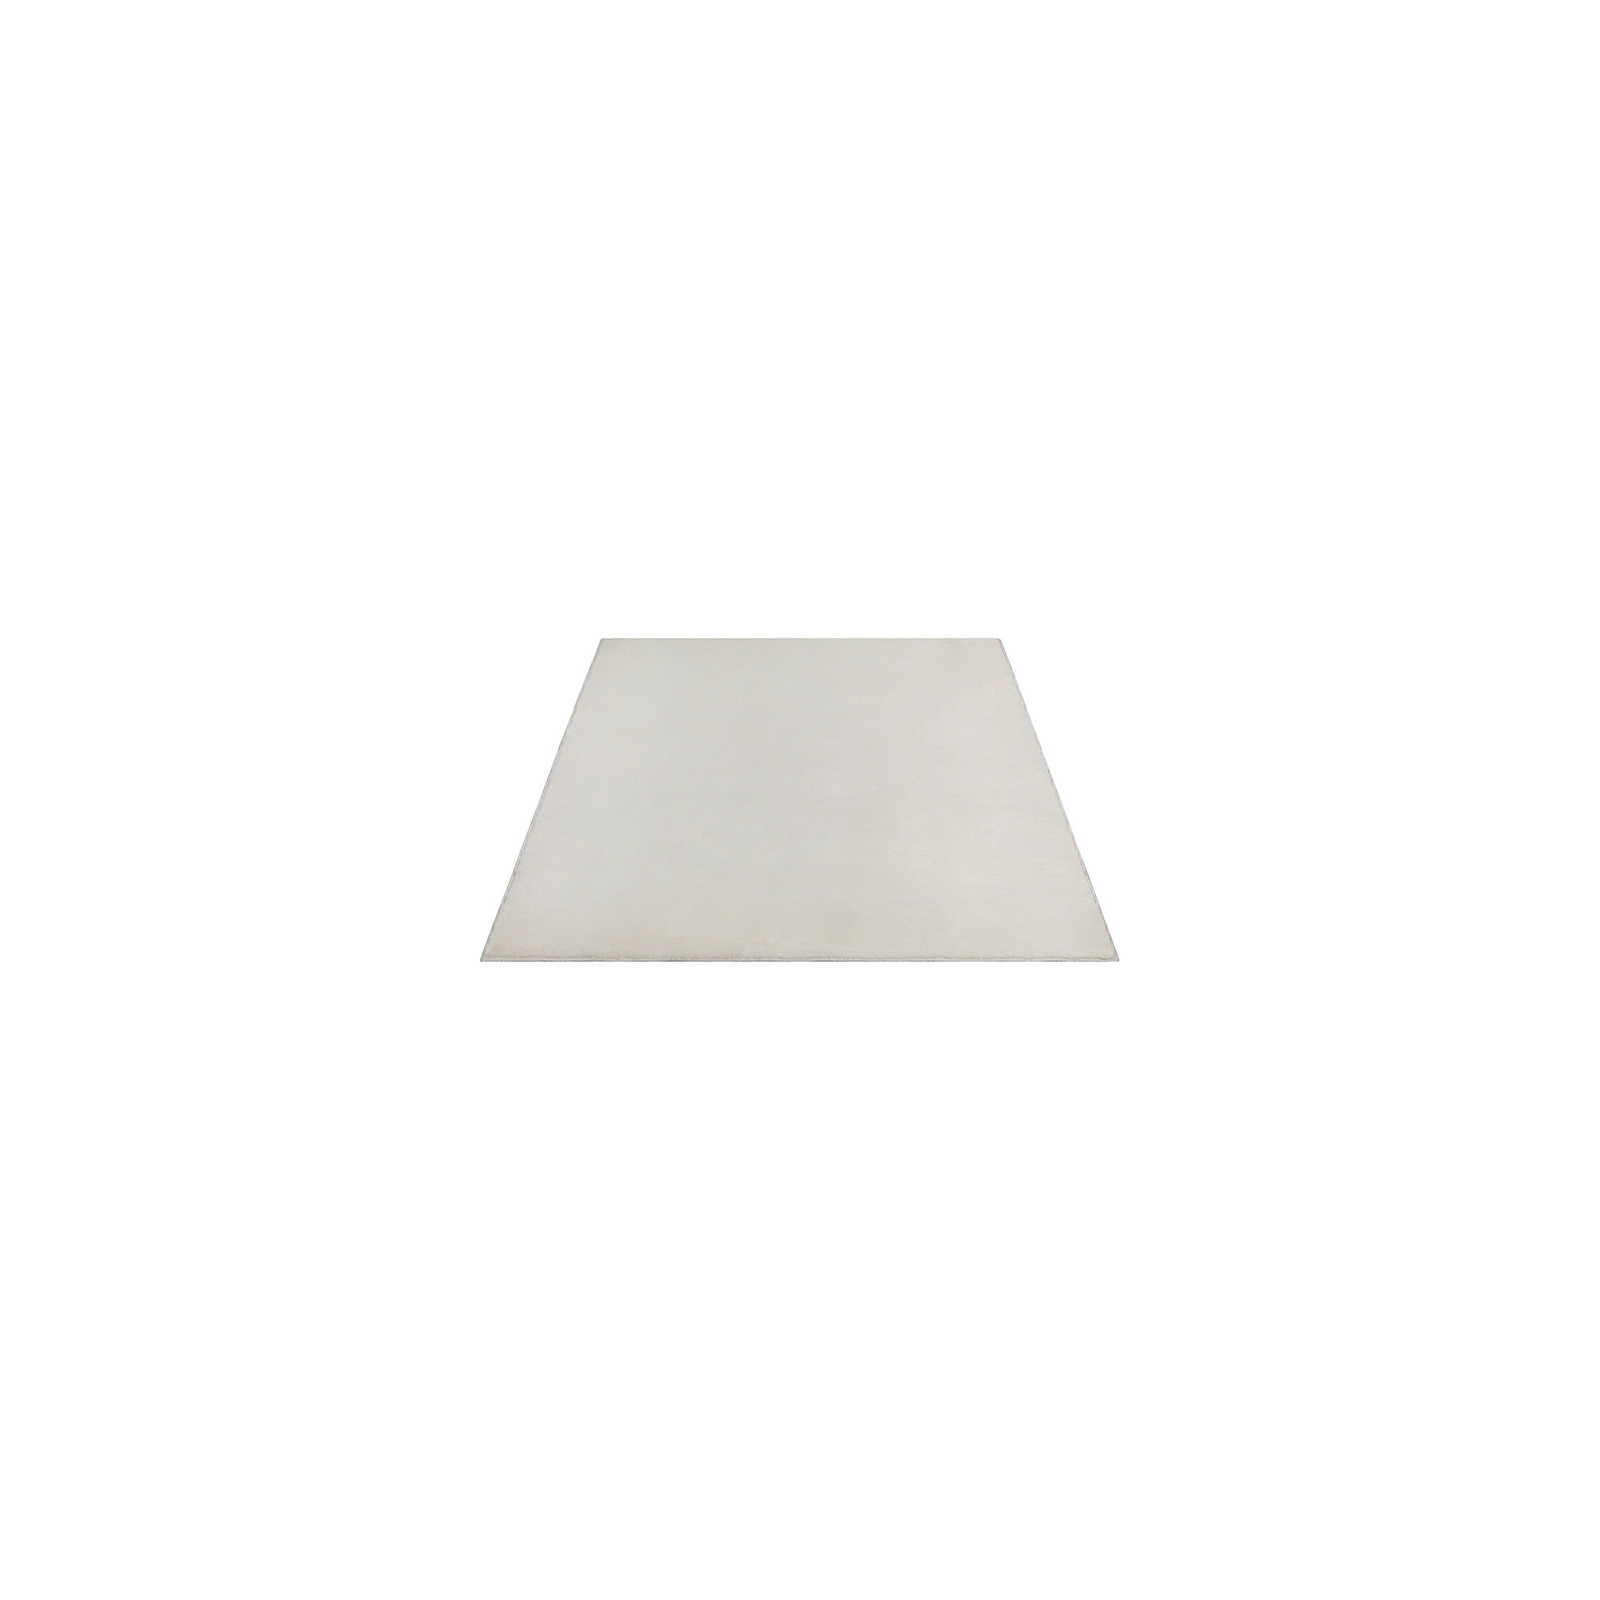 Zachtpolig tapijt in crème - 140 x 70 cm
